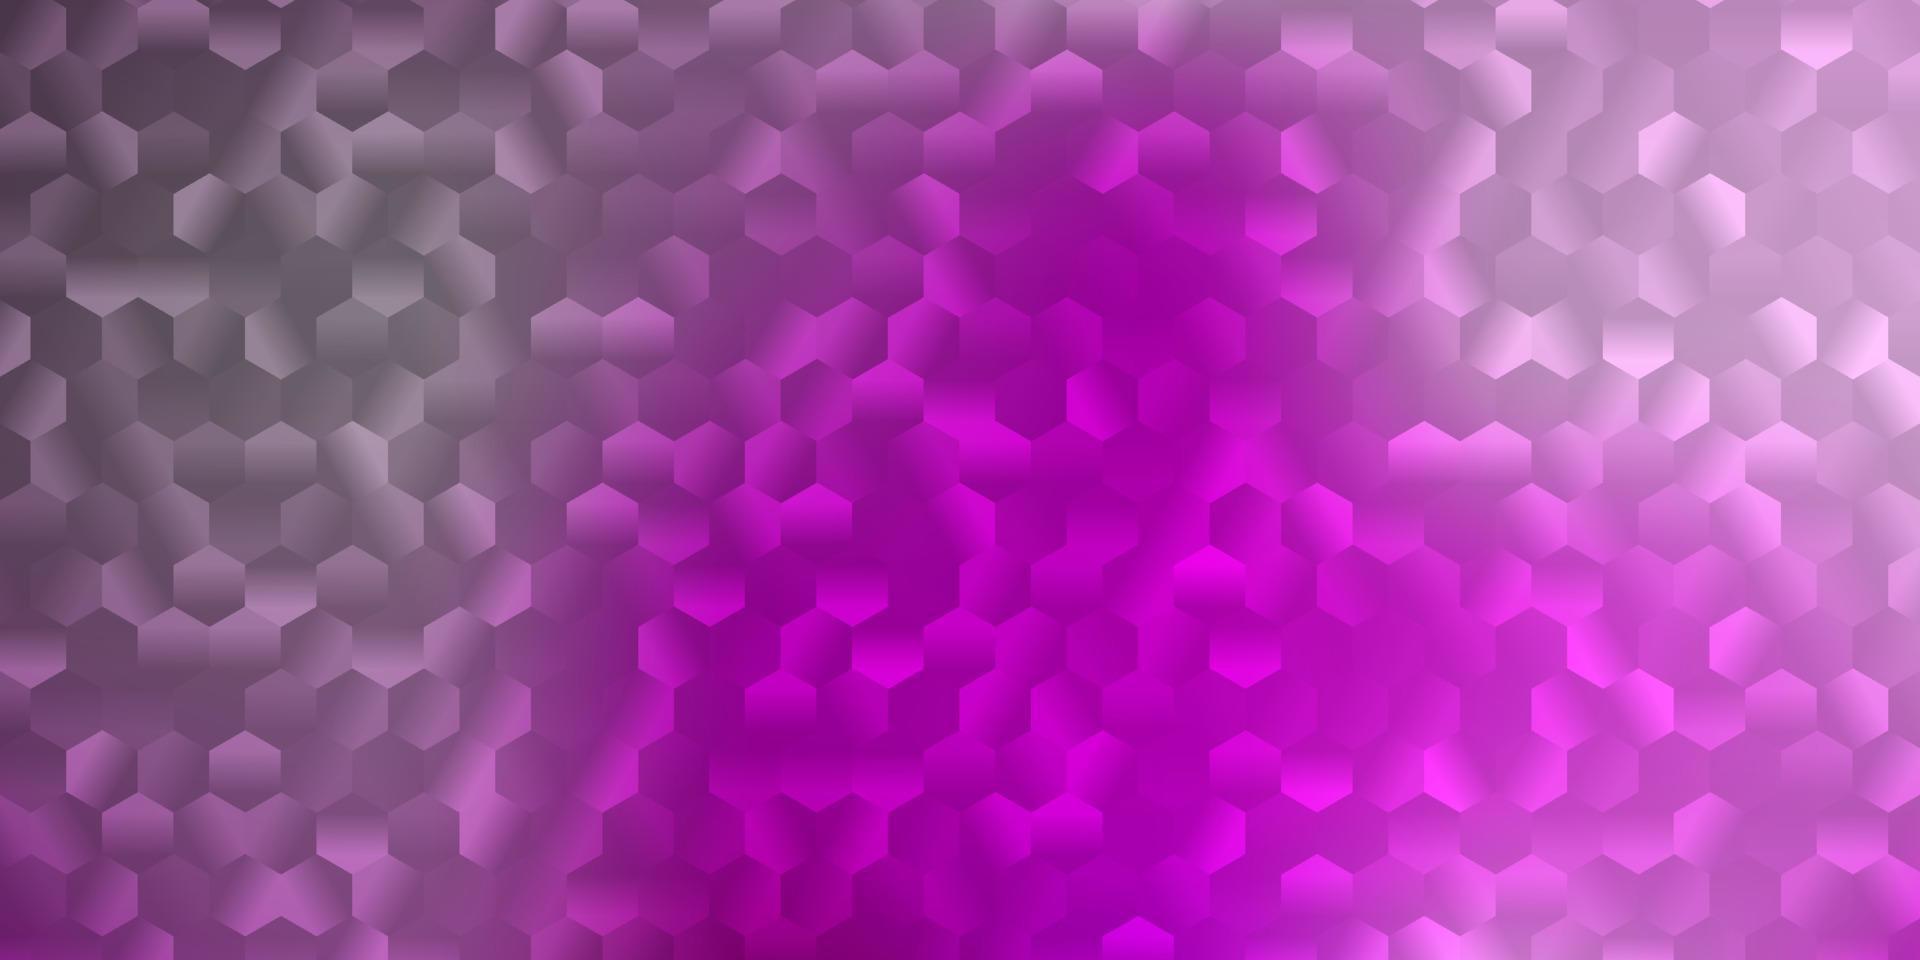 motif vectoriel violet clair, rose avec des hexagones.